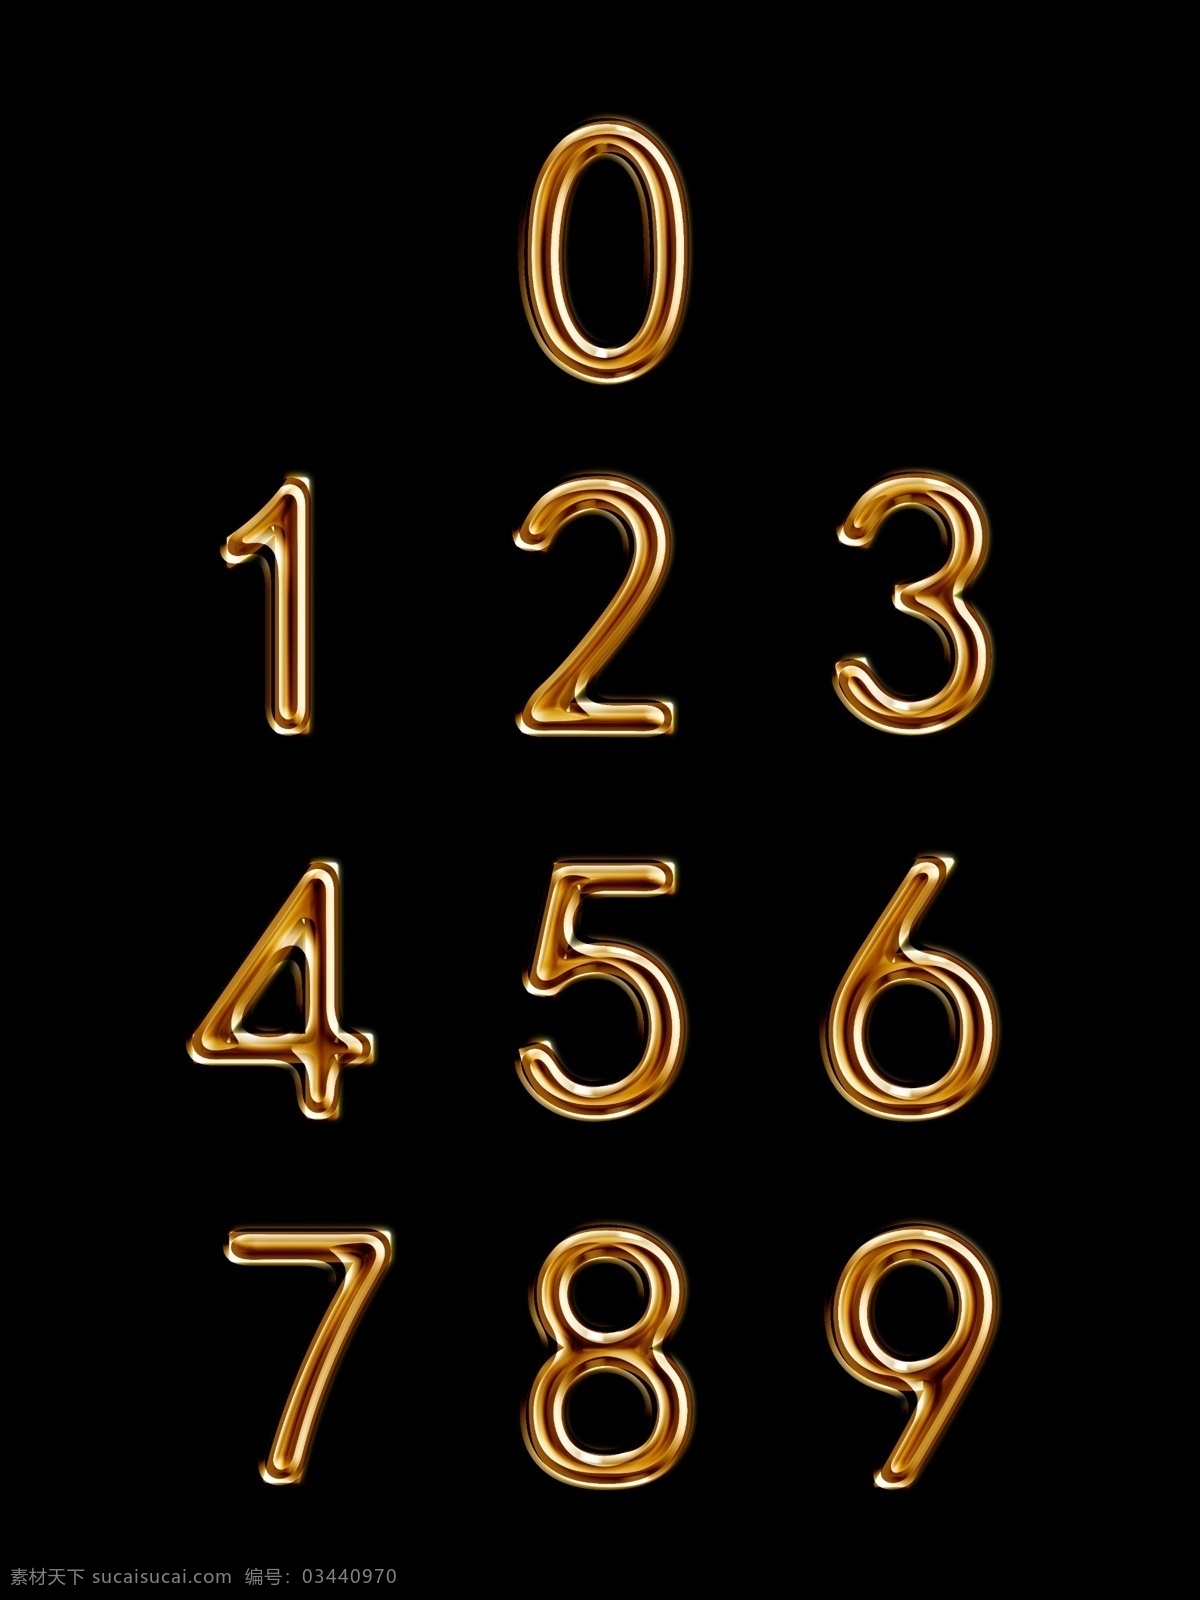 金色 浮雕 立体 阿拉伯数字 装饰 元素 数字 创意字体